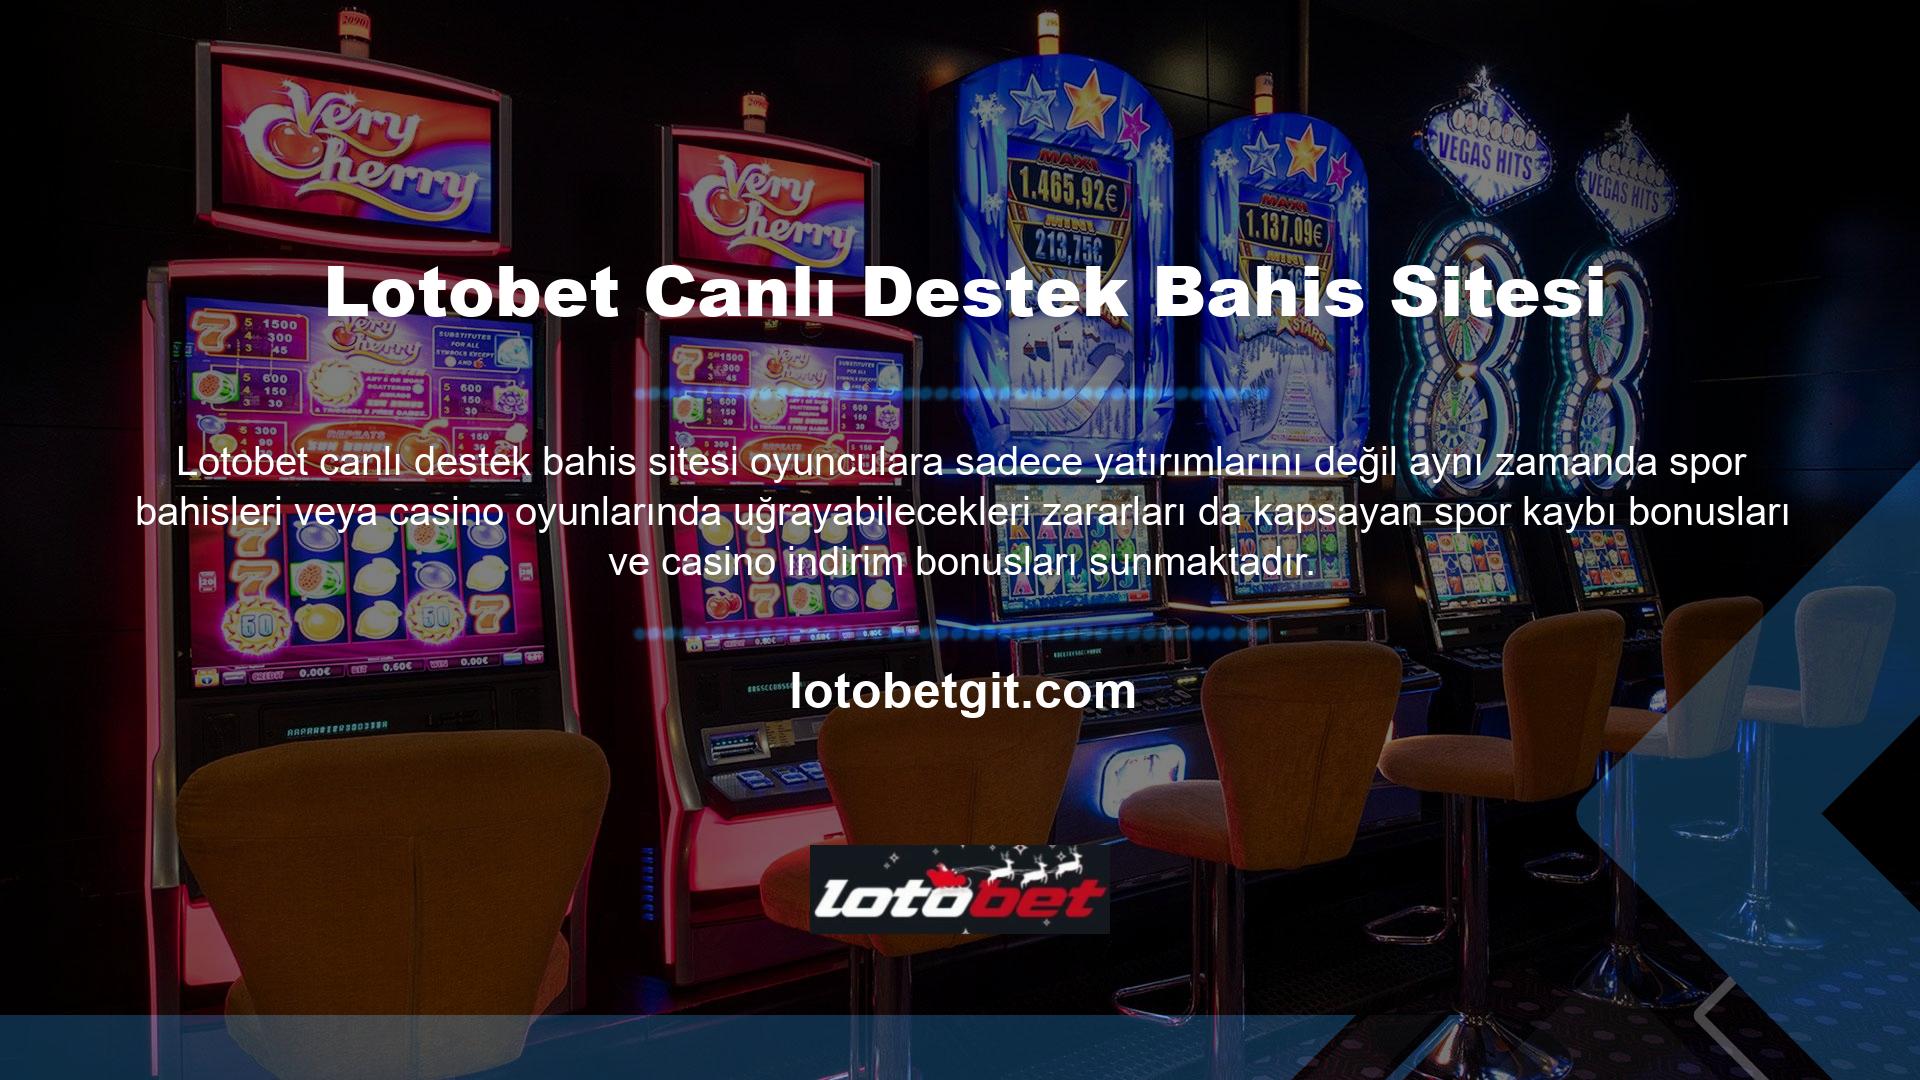 Lotobet bahis sitelerinden biri olan Lotobet Canlı Bahis ve Canlı Casino Sitesi, oyunculara en hızlı ve güvenli para yatırma ve çekme tekniklerini sunmaktadır